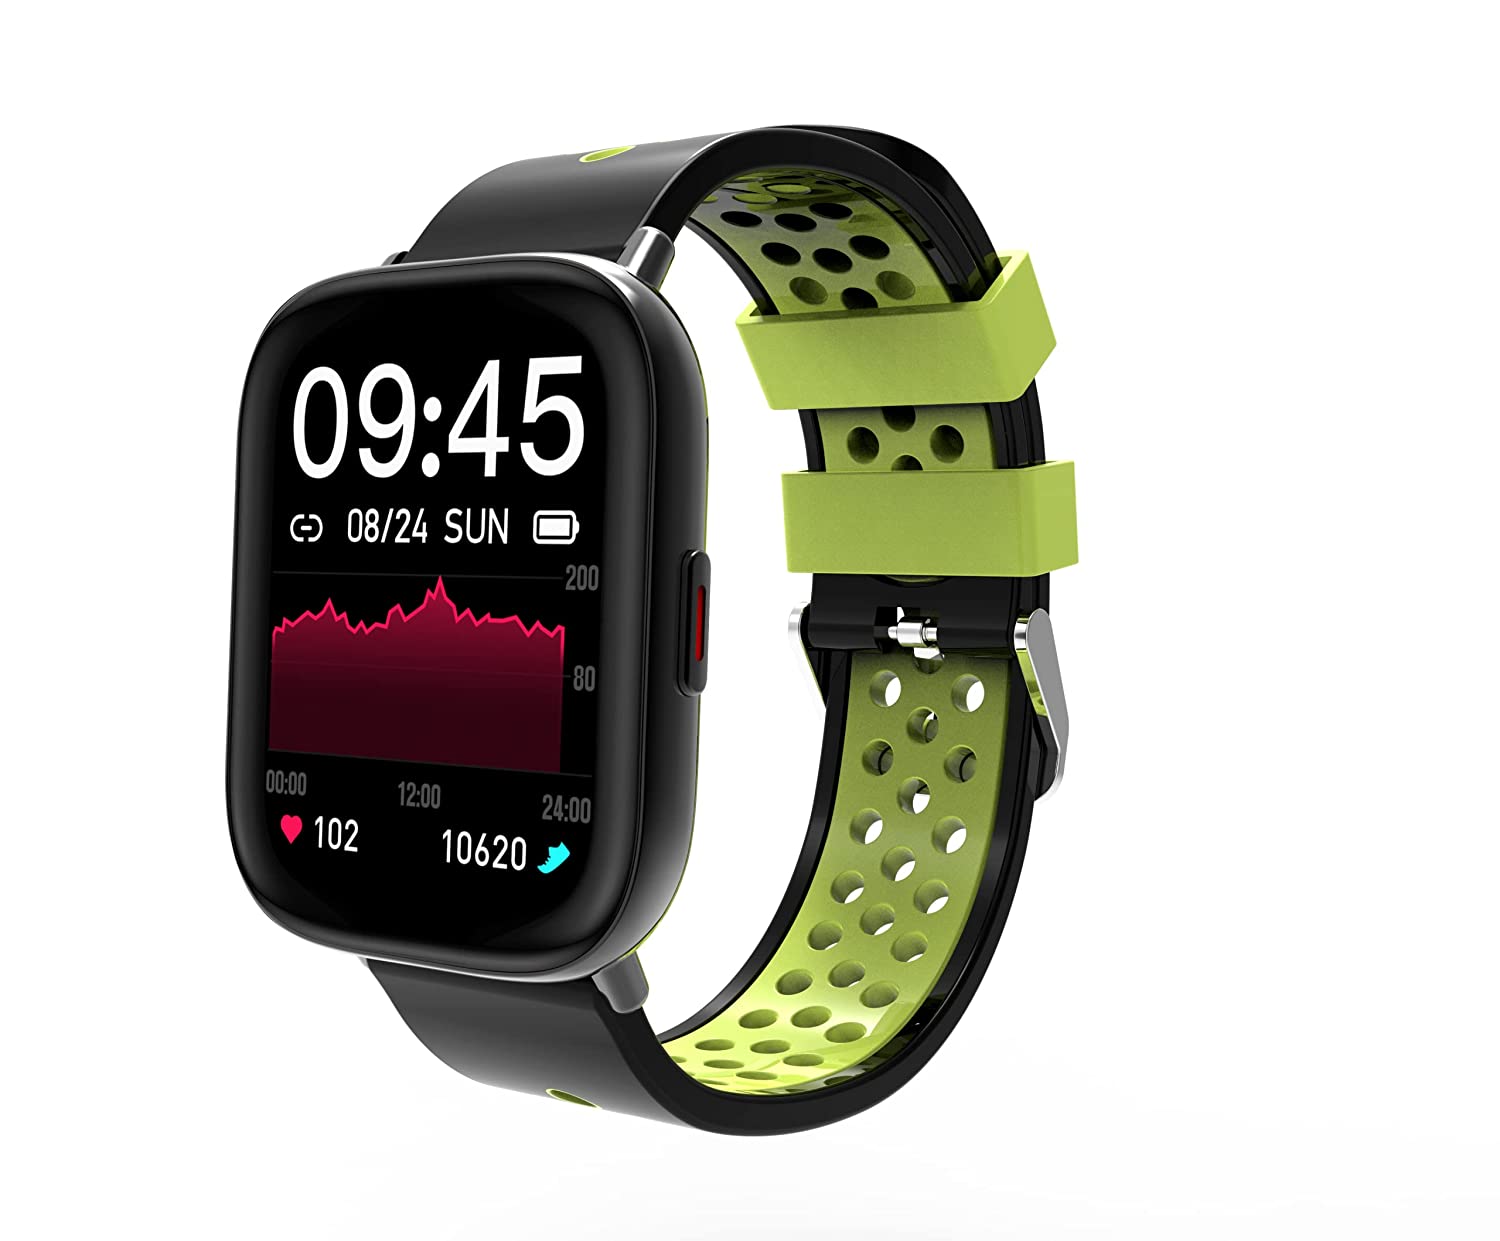 Smart Watch Offer: ये है 2 हजार से कम कीमत की न्यू लॉन्च स्मार्ट वॉच, ऑफर में 80% तक का डिस्काउंट